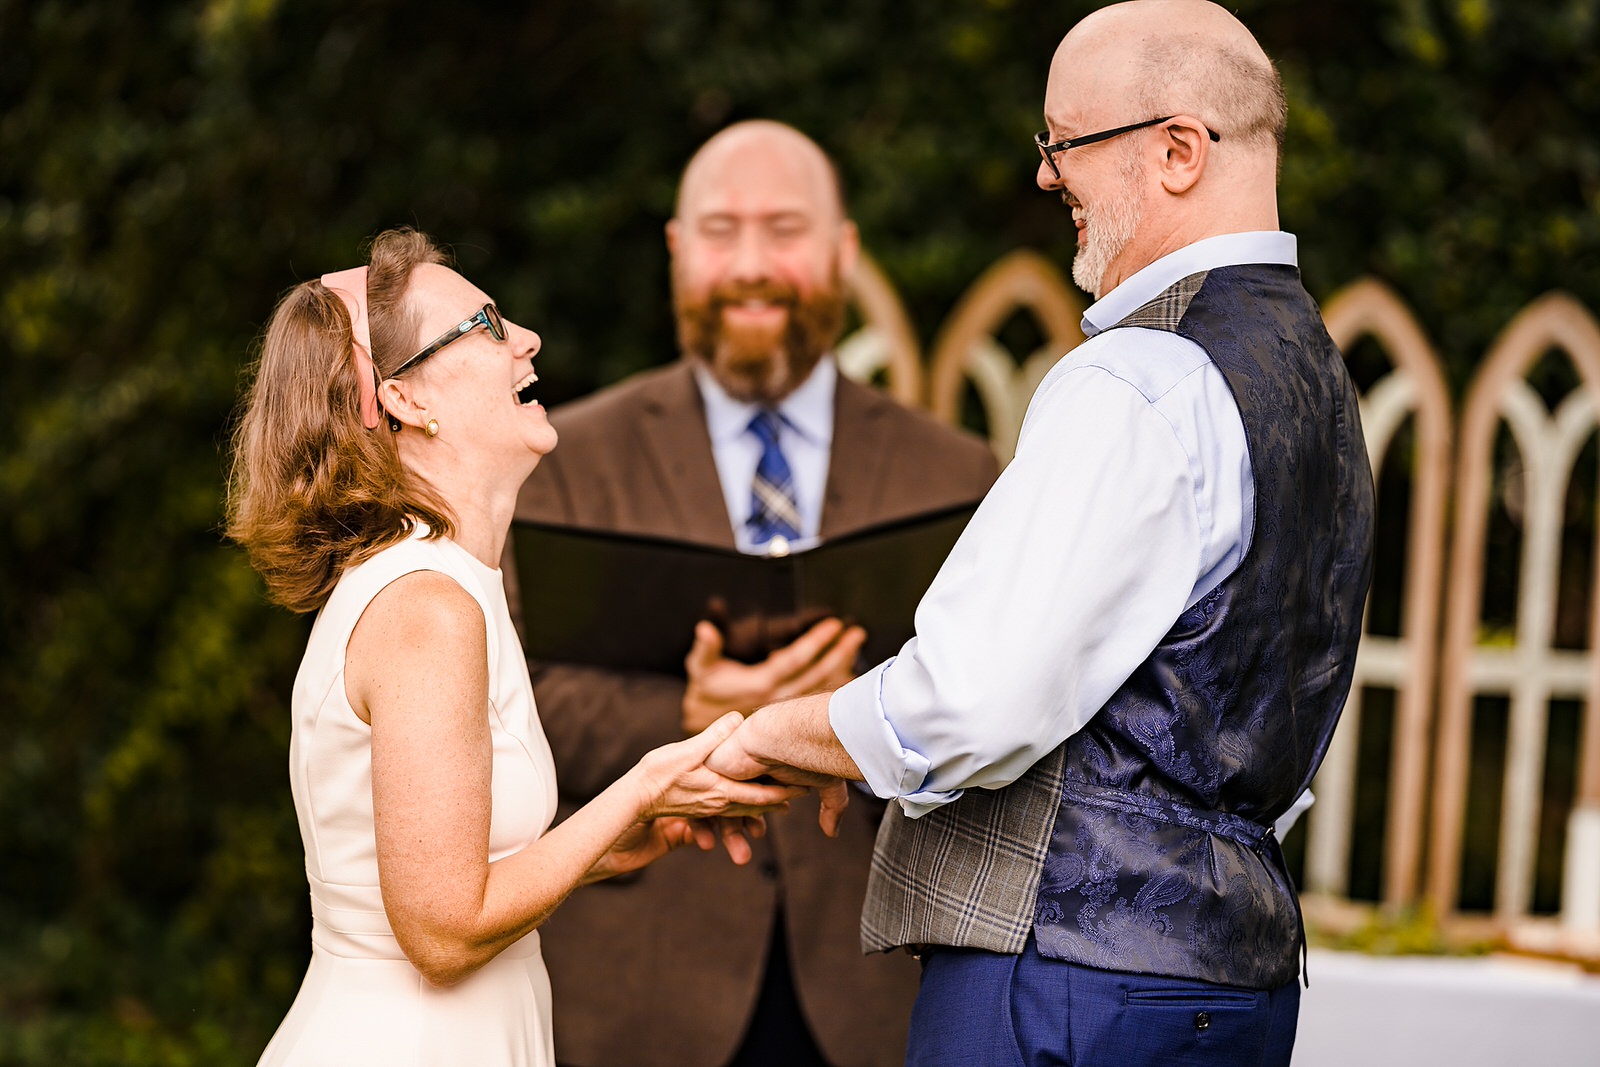 The best wedding ceremonies include laughter